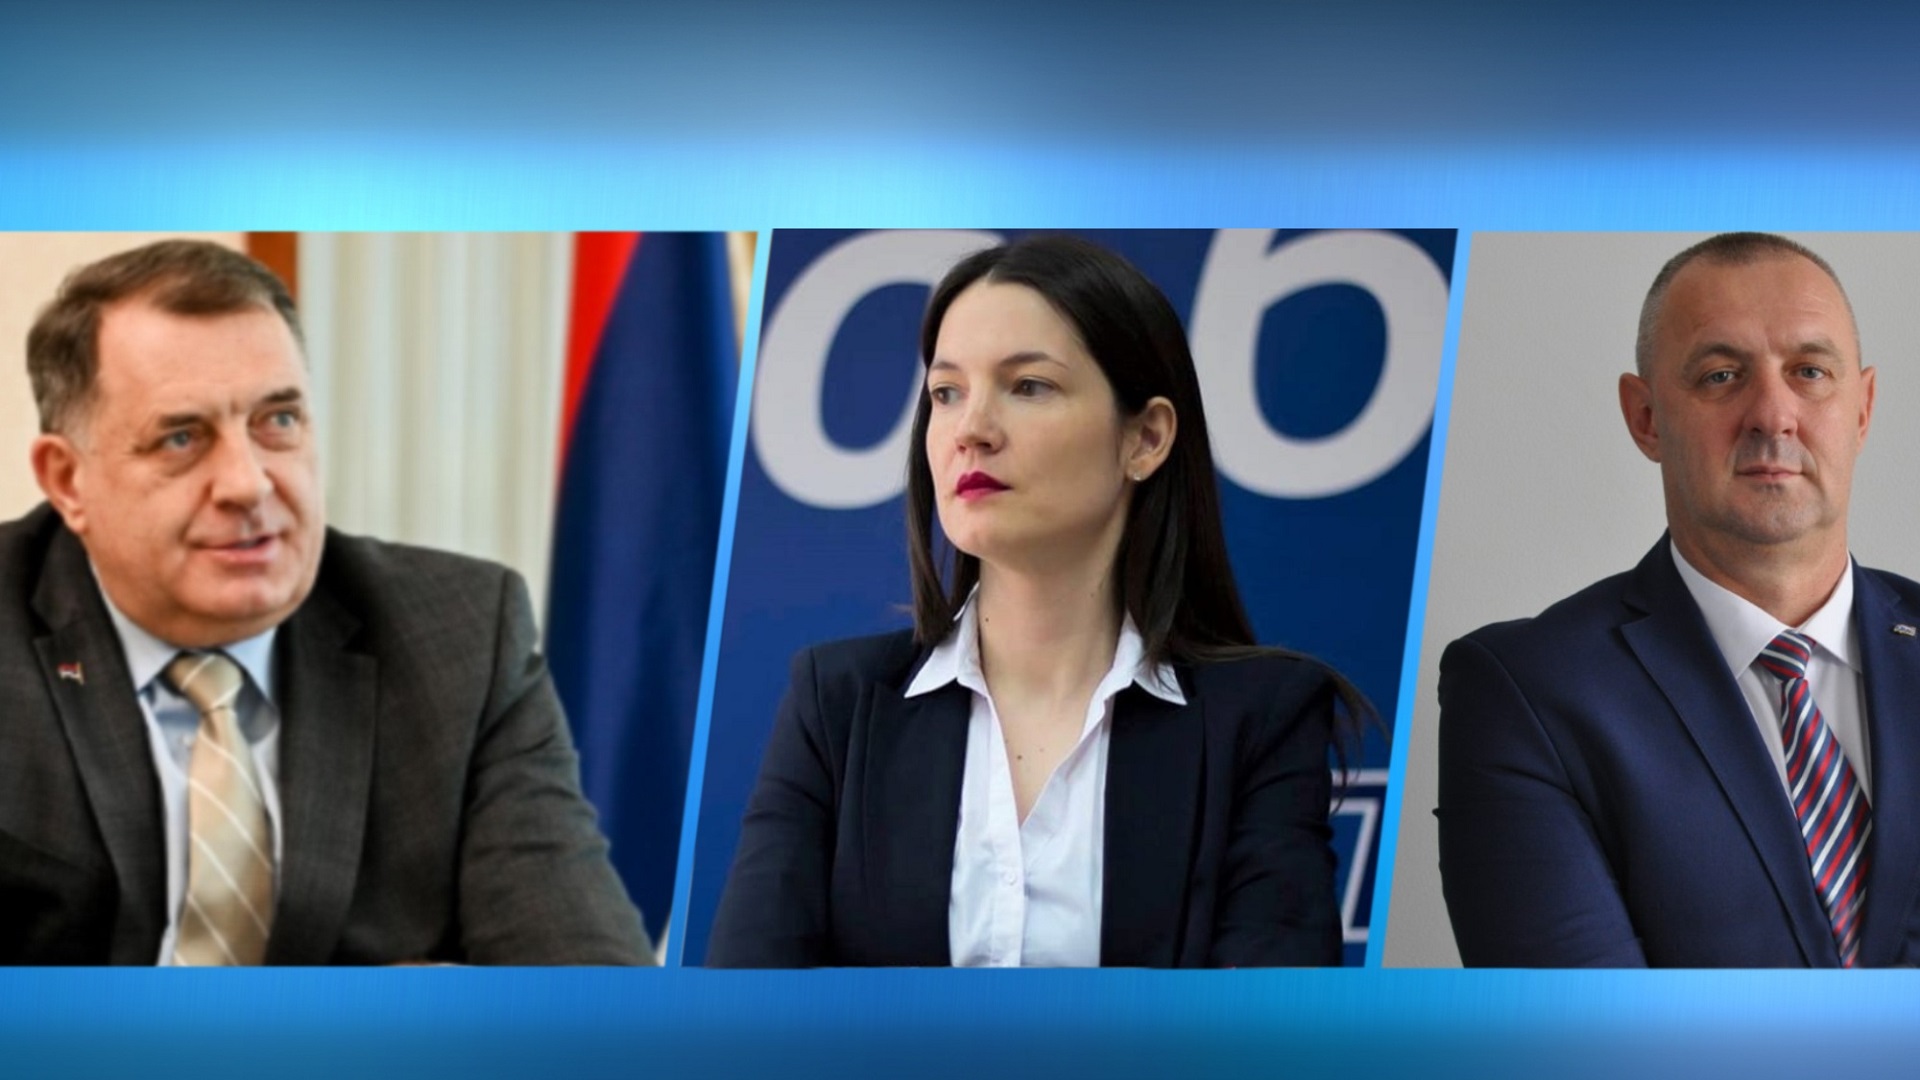 kandidati_dodik_trivic_jovicic_una Cropped.jpg